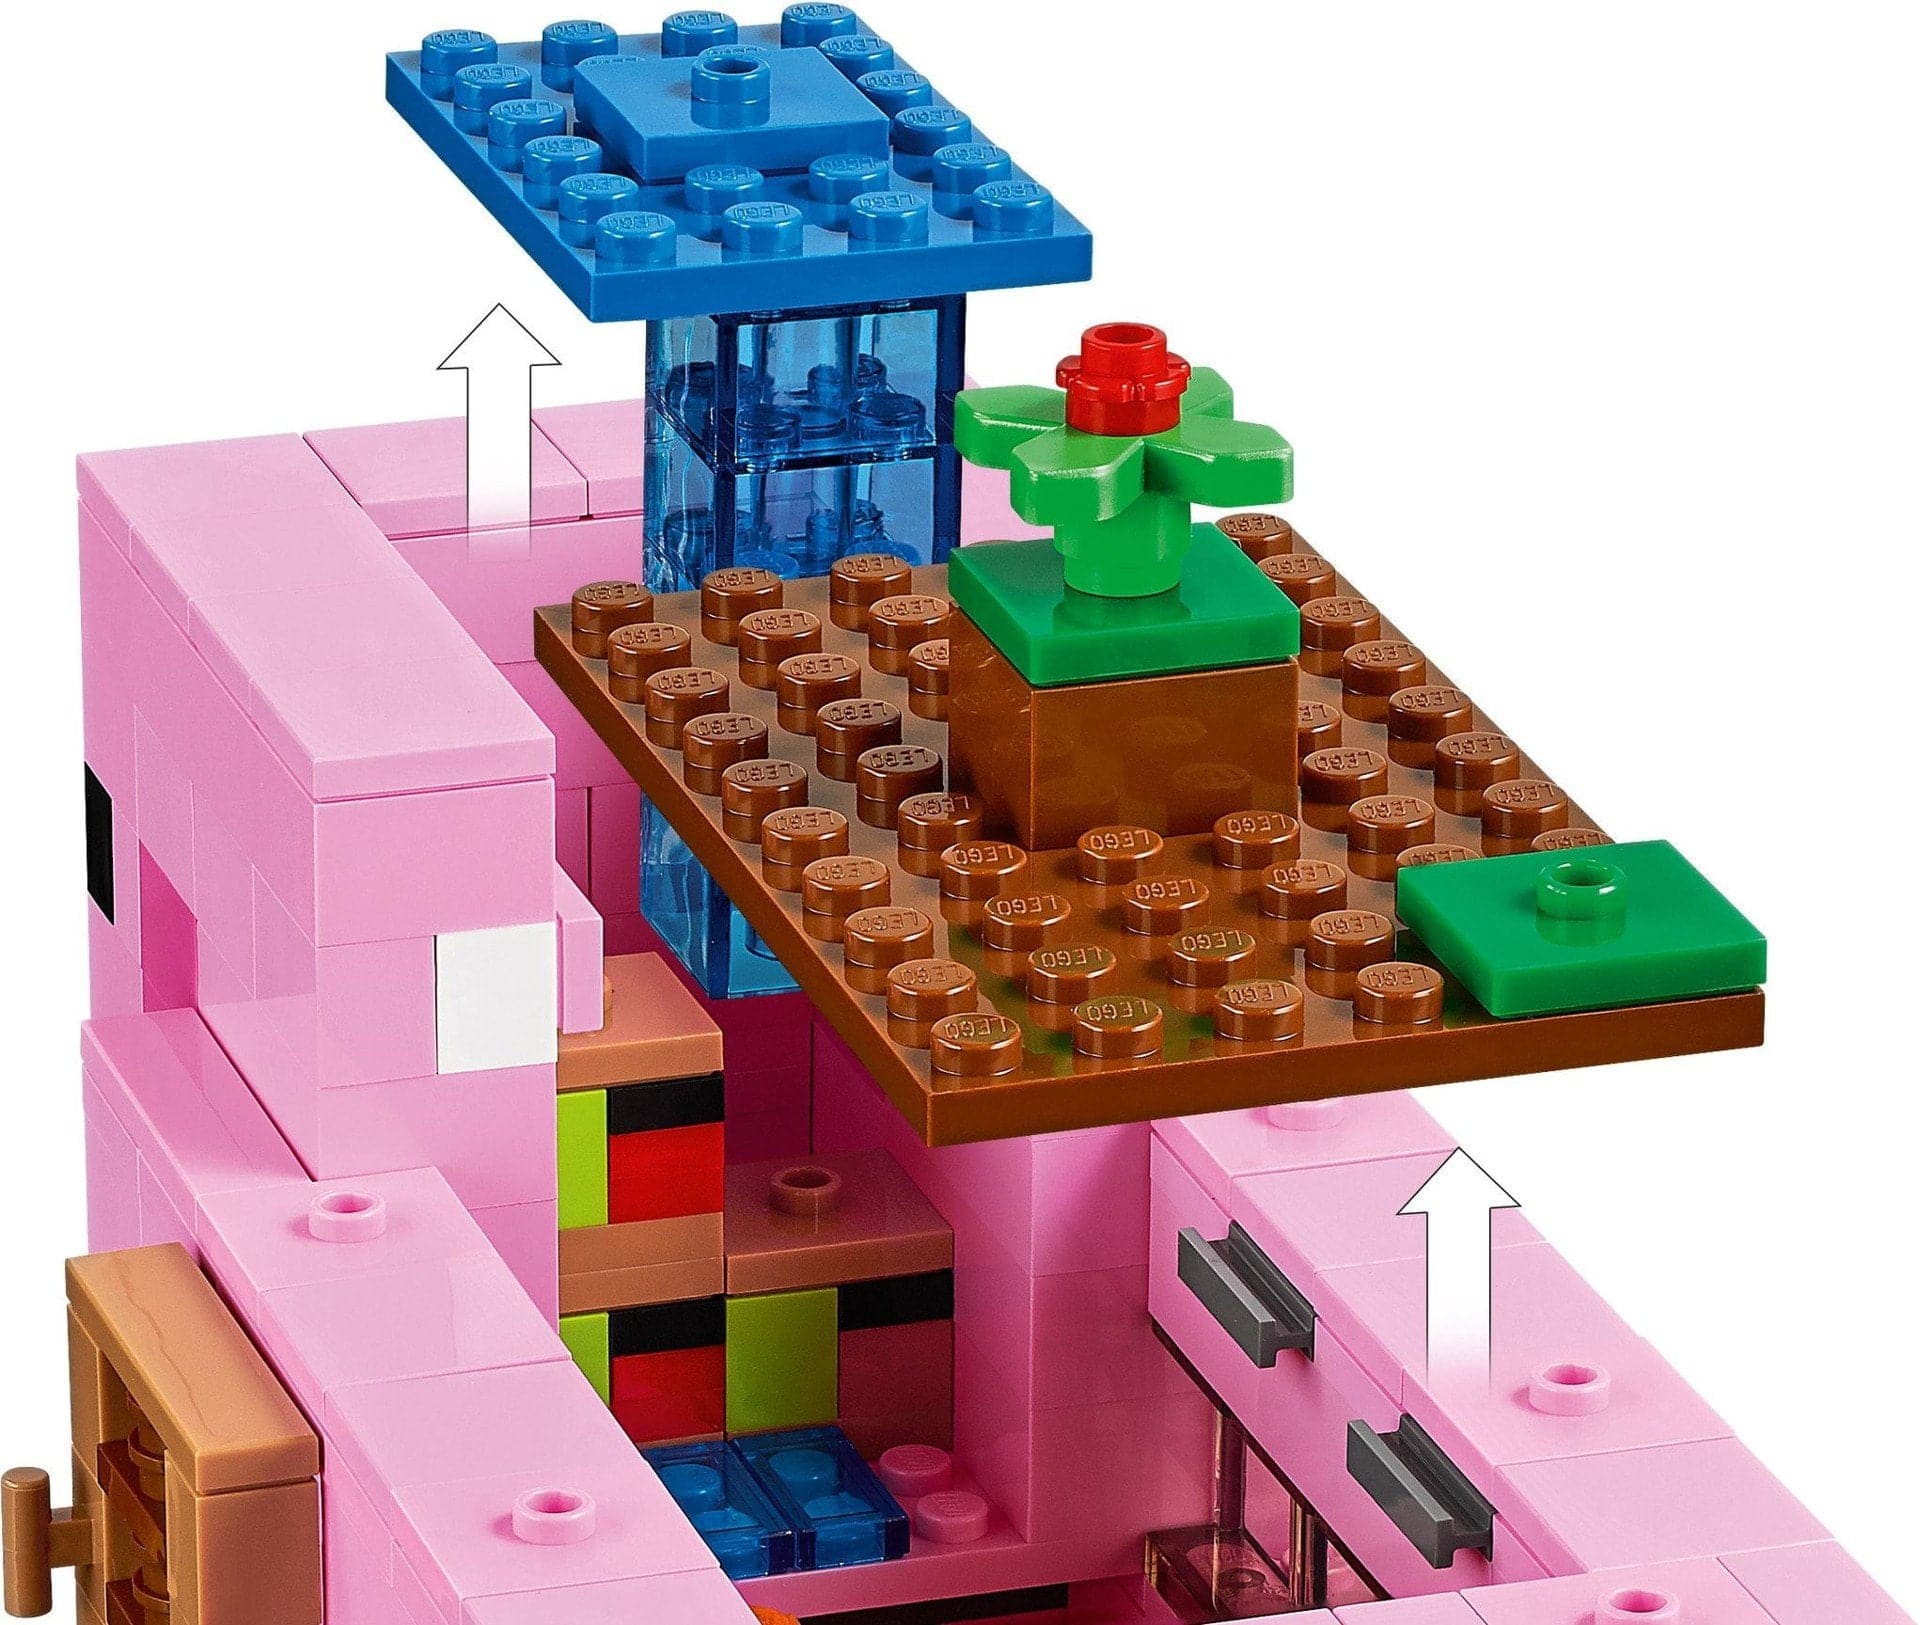 LEGO Minecraft - Grisehuset (21170) Lego